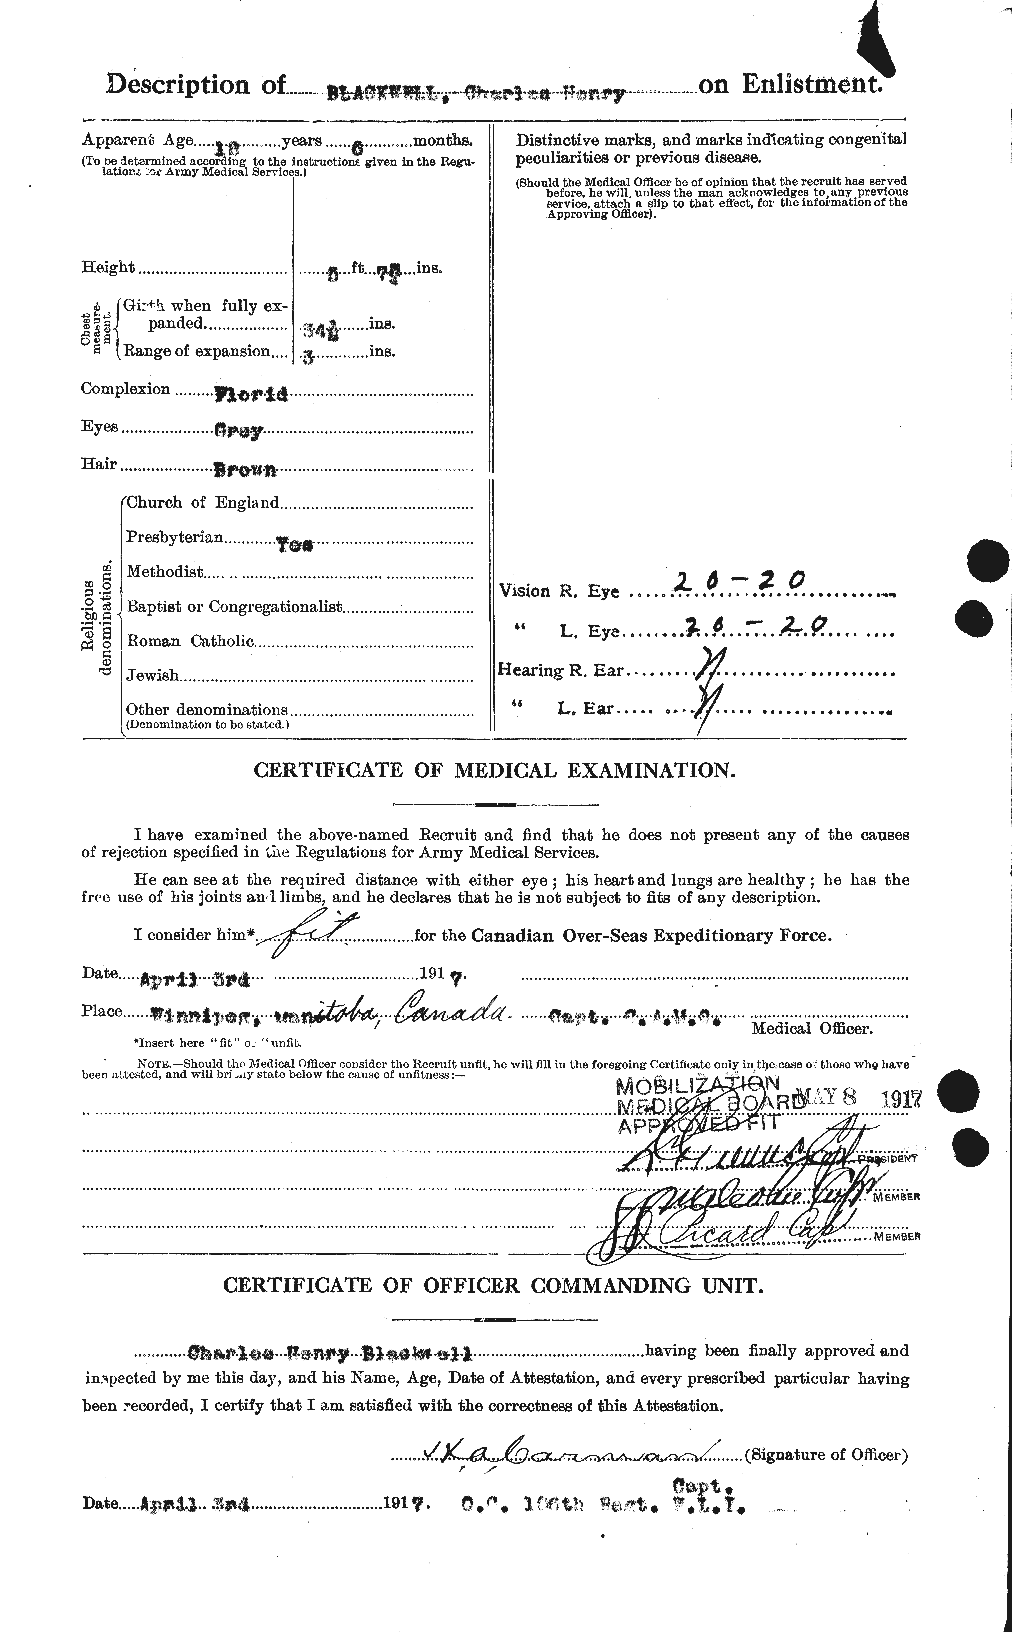 Dossiers du Personnel de la Première Guerre mondiale - CEC 244473b